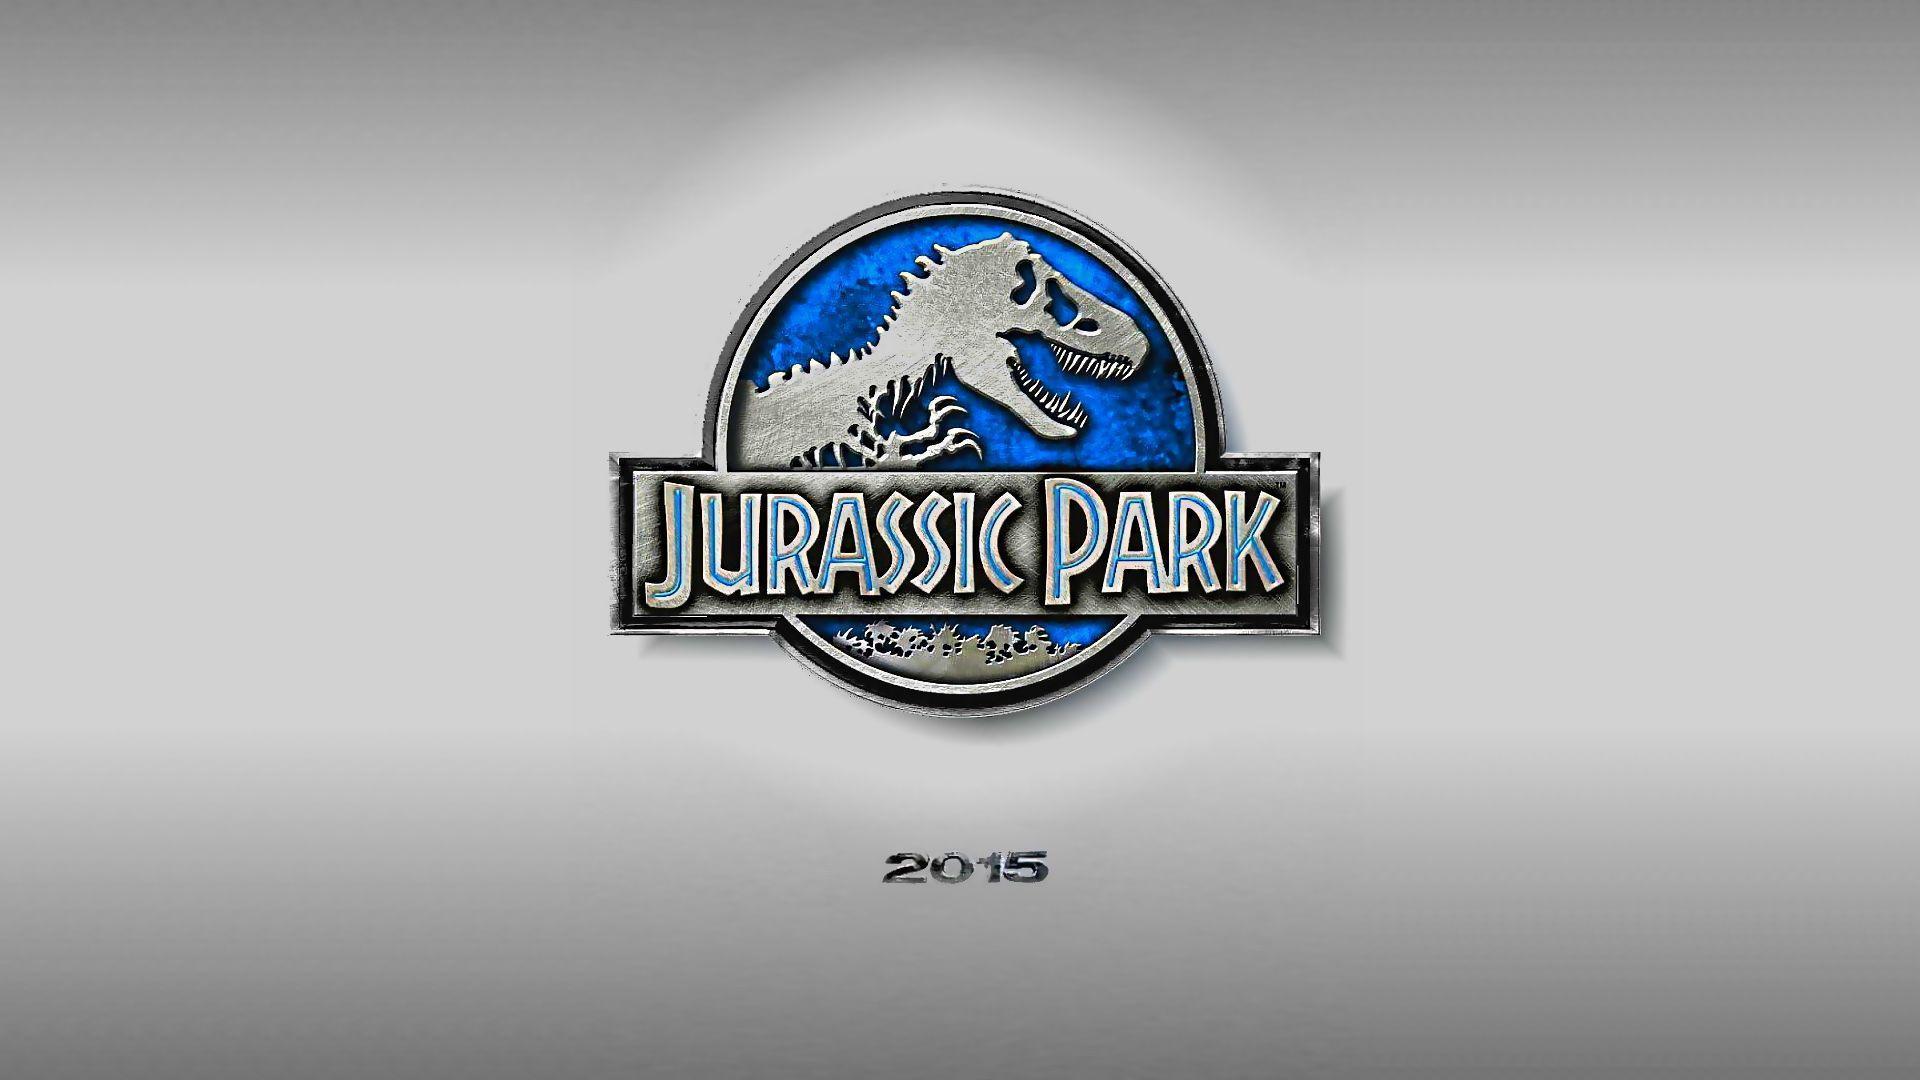 Jurassic Park 4 2015 Wallpaper